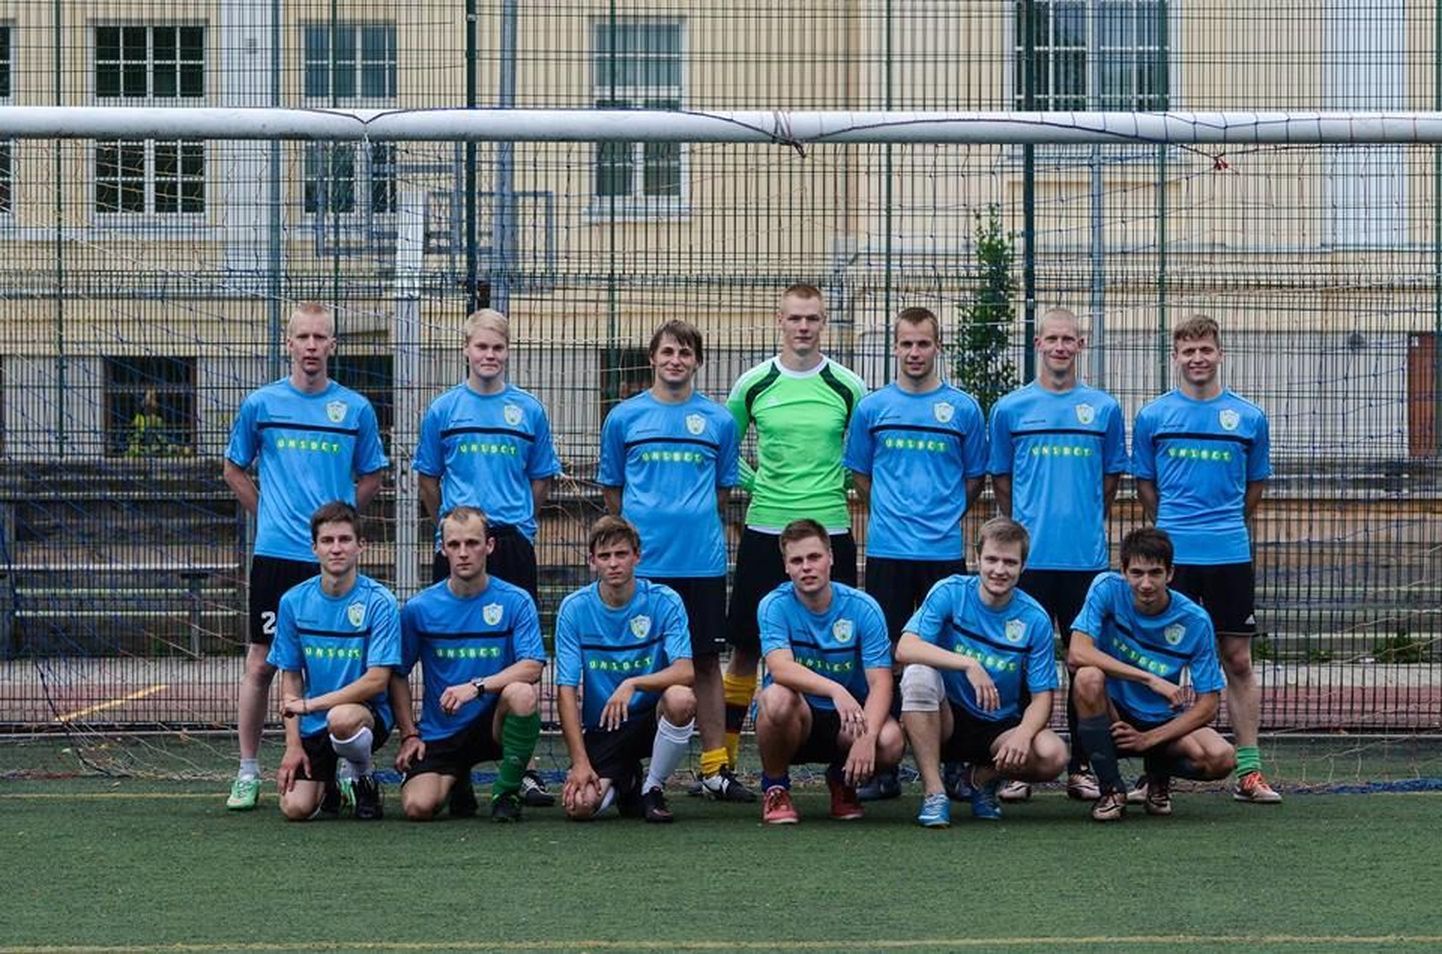 Jalgpallimeeskond Kõpu loodi eelmisel aastal. Täna õhtul kohtuvad sealsed mängijad saalijalgpallis Eesti jalgpalliliidu esindusega.